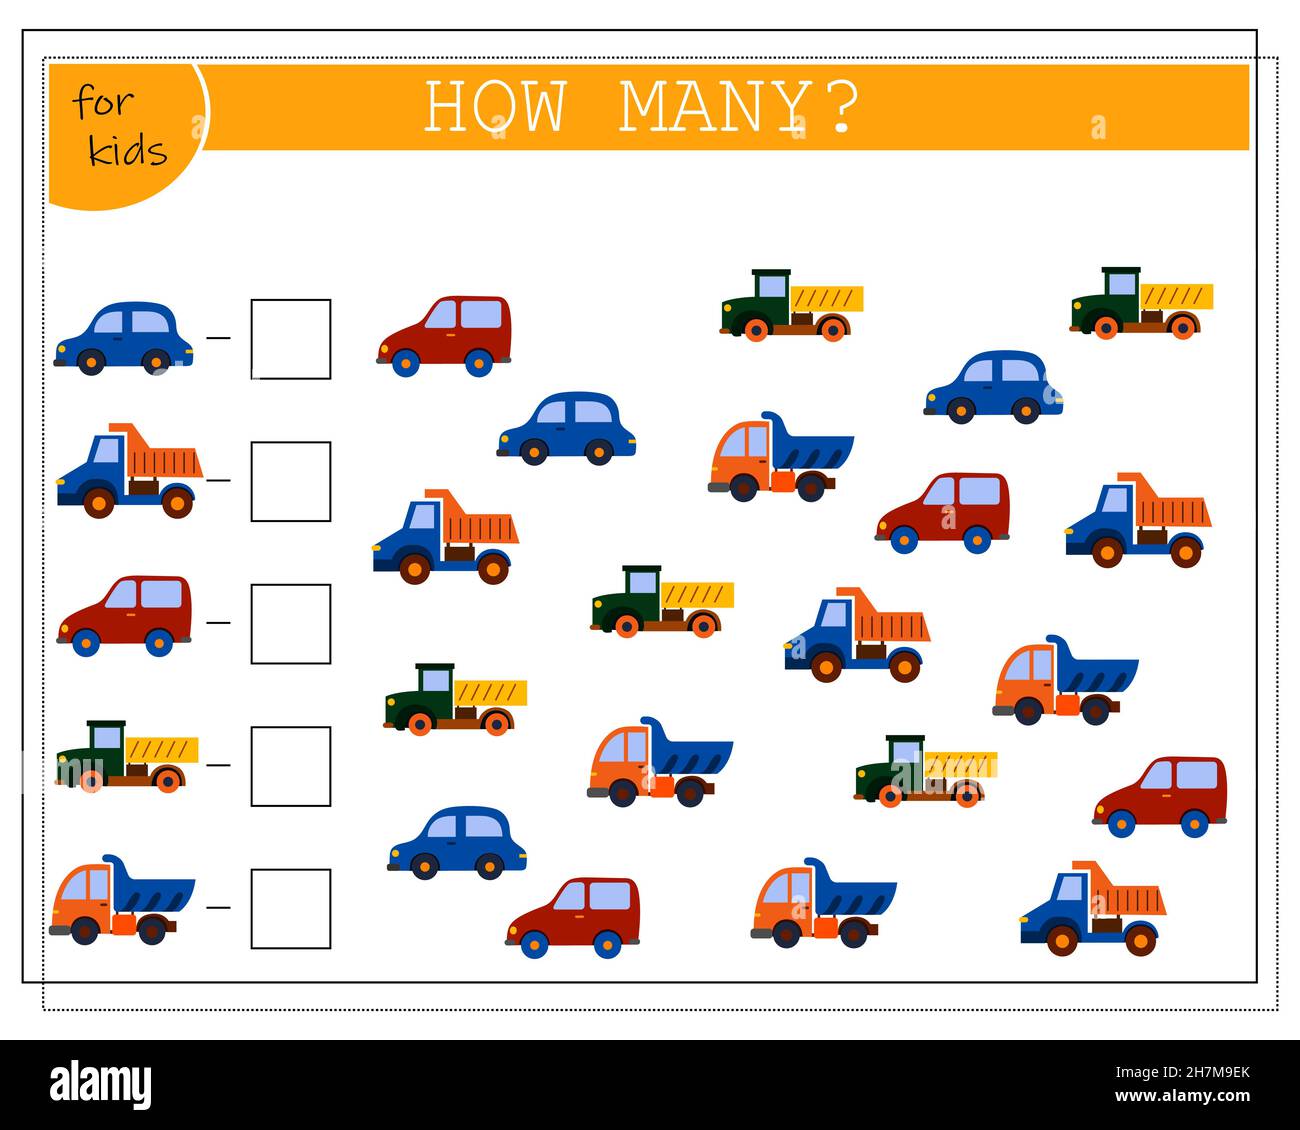 Kinder-Mathe-Spiel, zählen, wie viele von ihnen. Kinderspielzeug Autos. vektor Stock Vektor